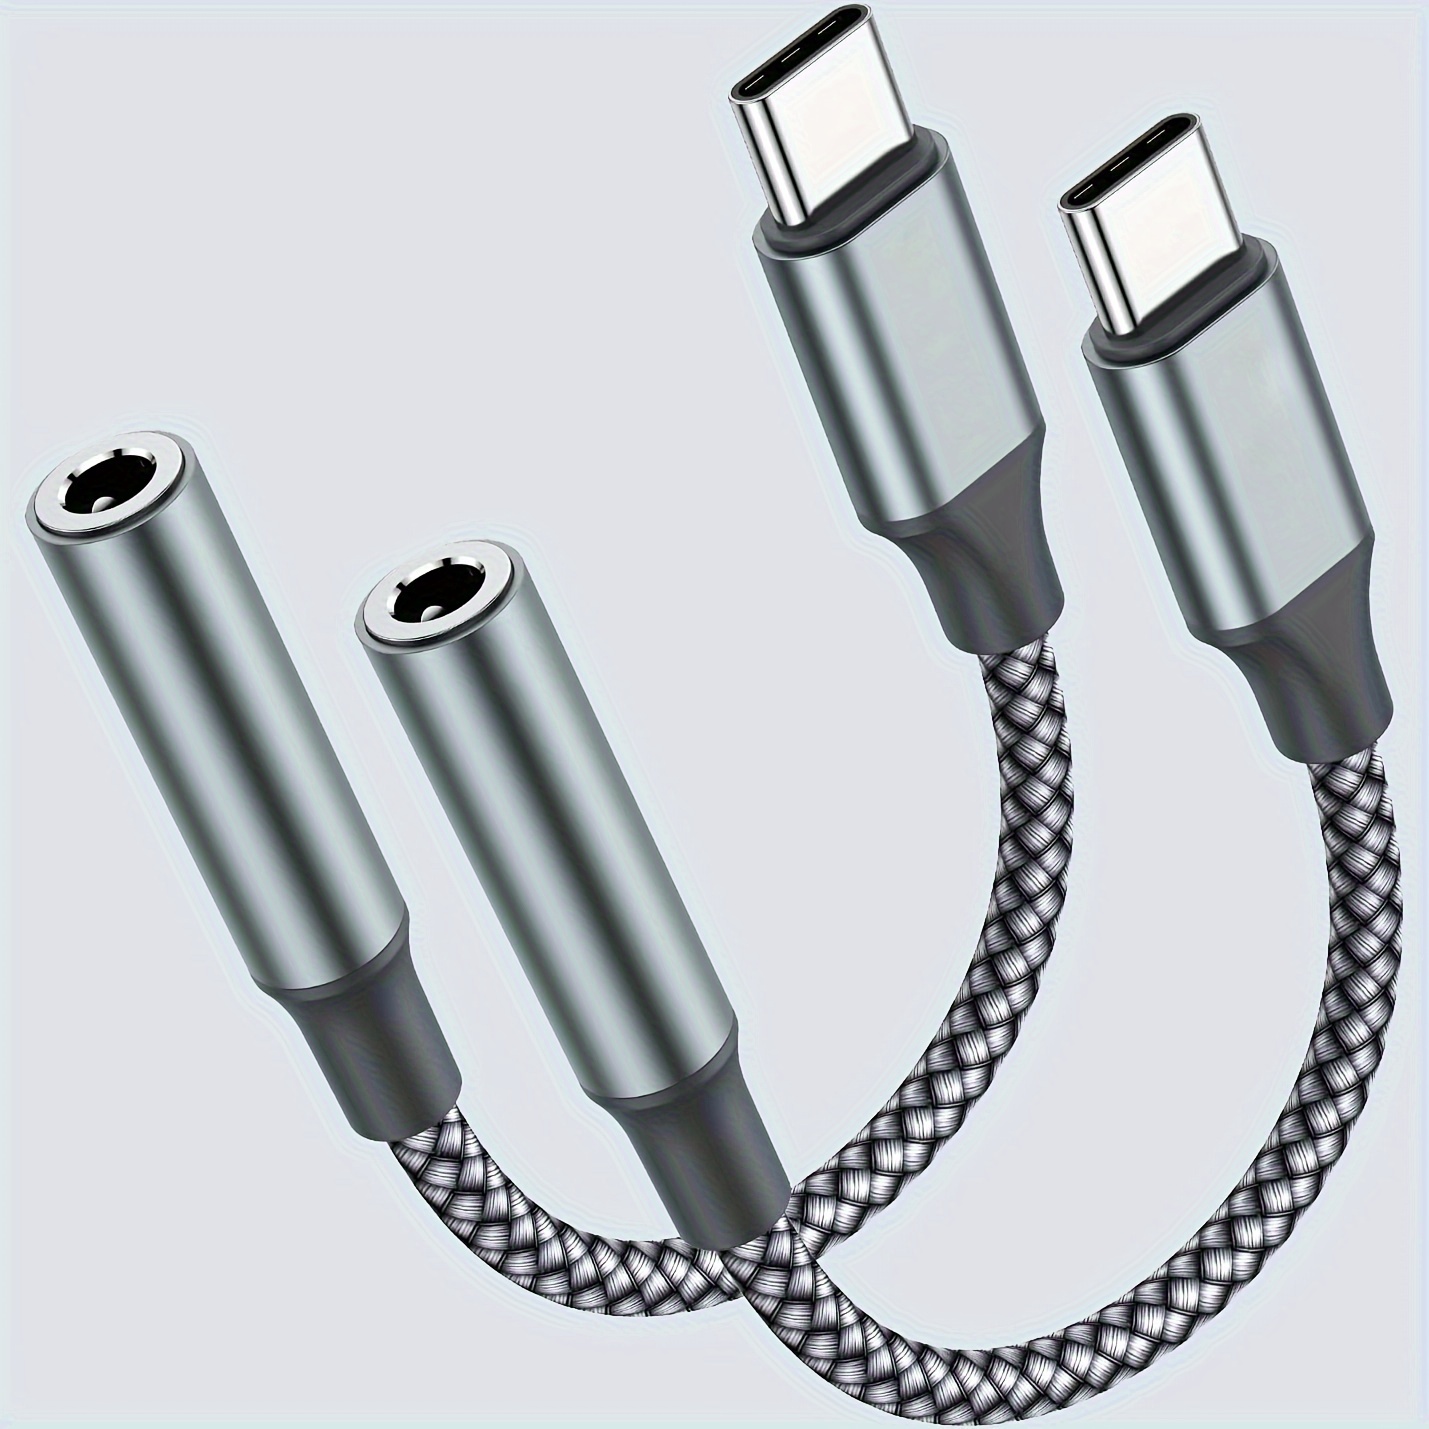 Adaptateur pour écouteur prise USB-C/sortie jack femelle 3,5 mm